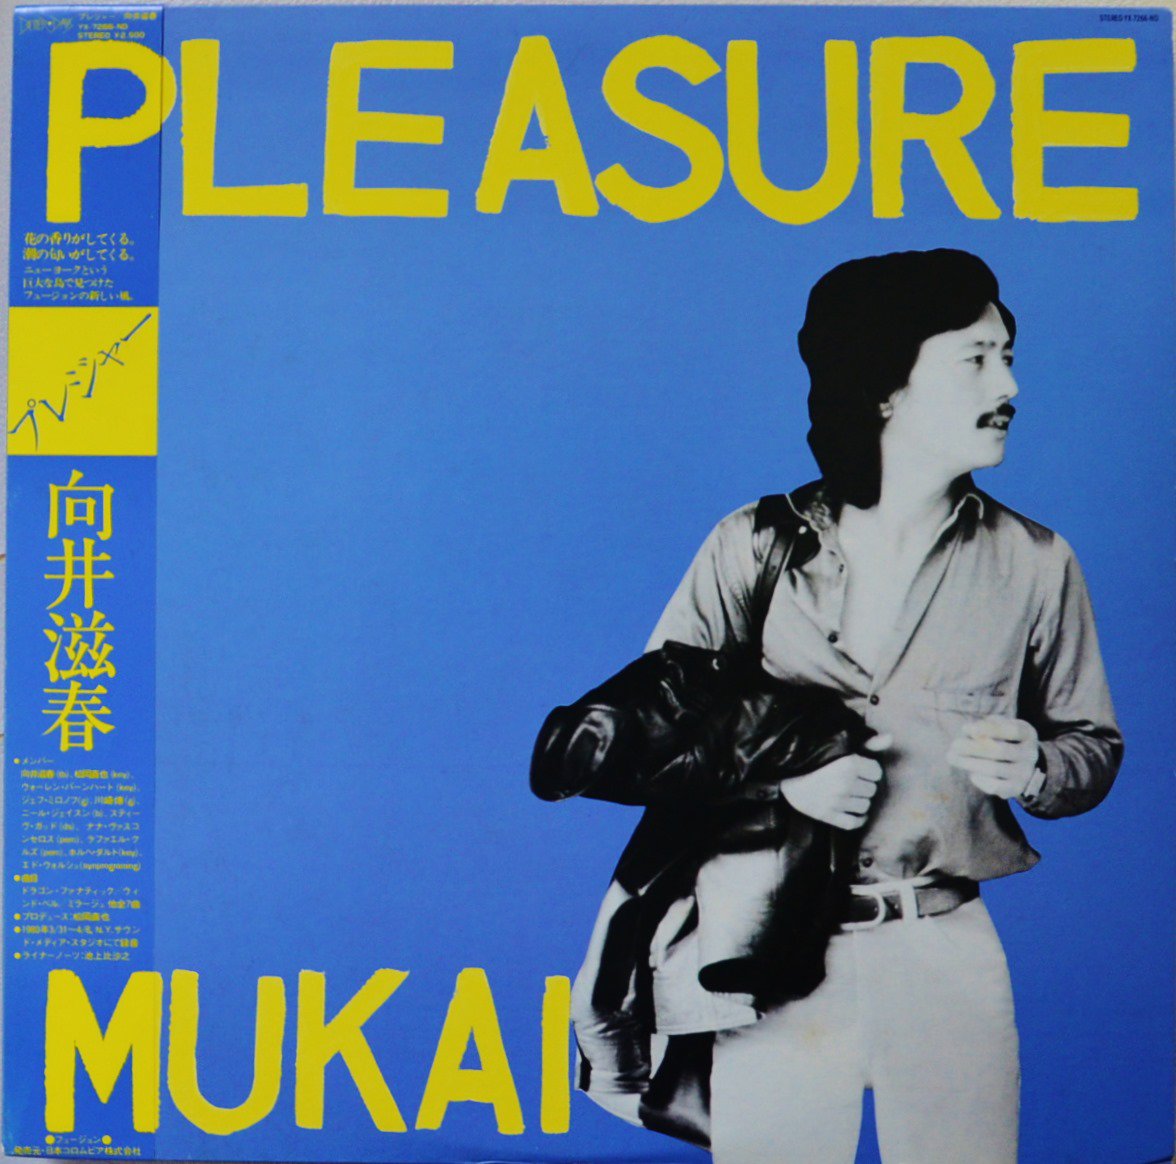 向井滋春 SHIGEHARU MUKAI / プレジャー PLEASURE (LP)